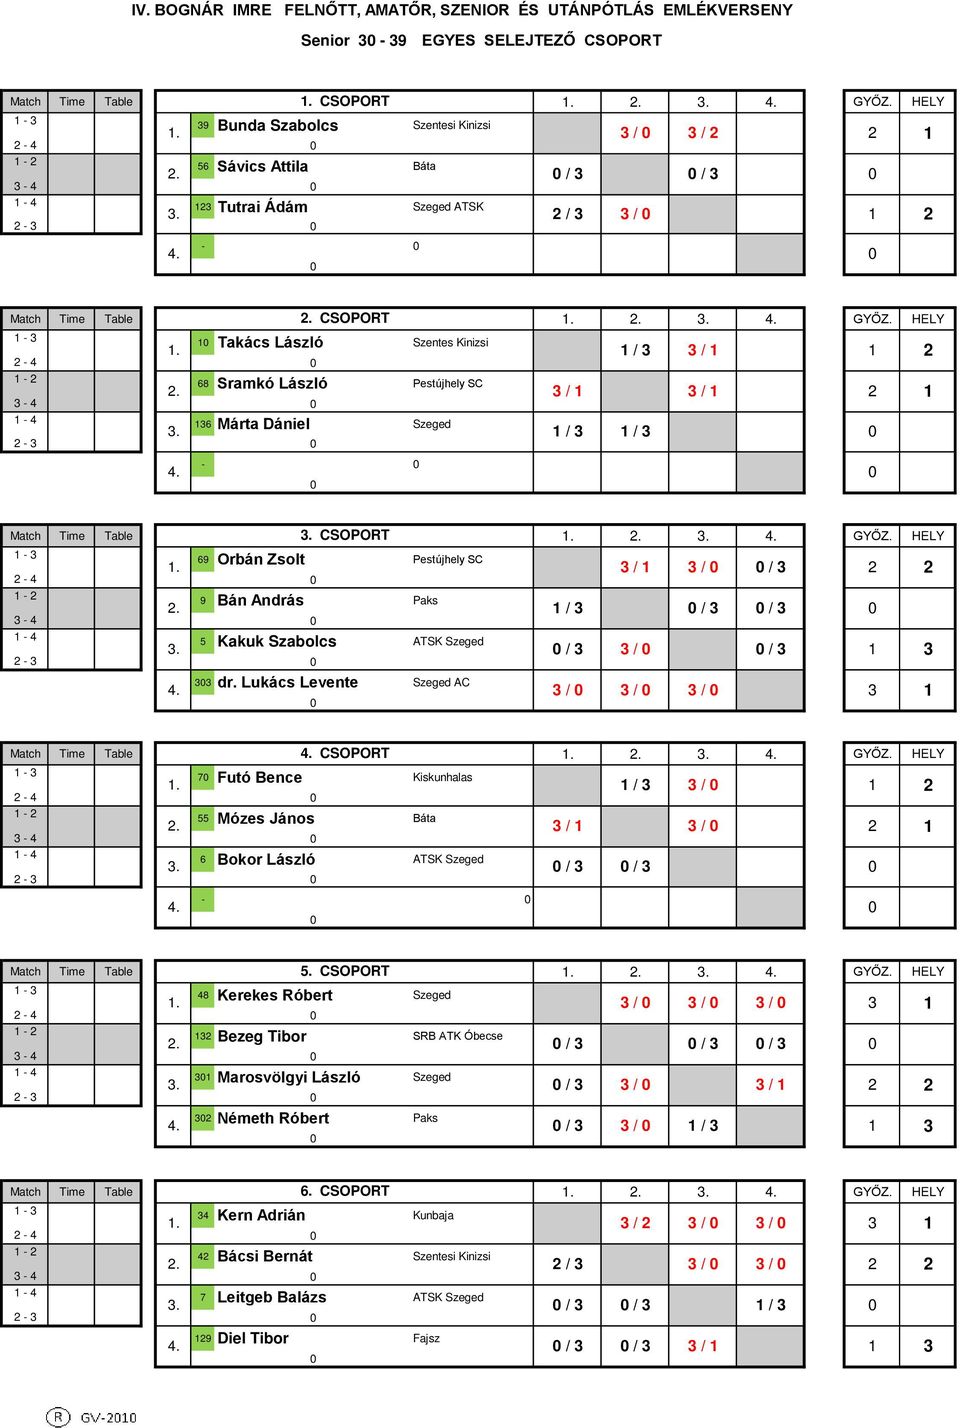 3 / 3 / 3-4 - 4 36 Márta Dániel Szeged / 3 / 3-3 - Match Time Table CSOPORT - 3 69 Orbán Zsolt Pestújhely SC. 3 / 3 / / 3-4 - 9 Bán András Paks.